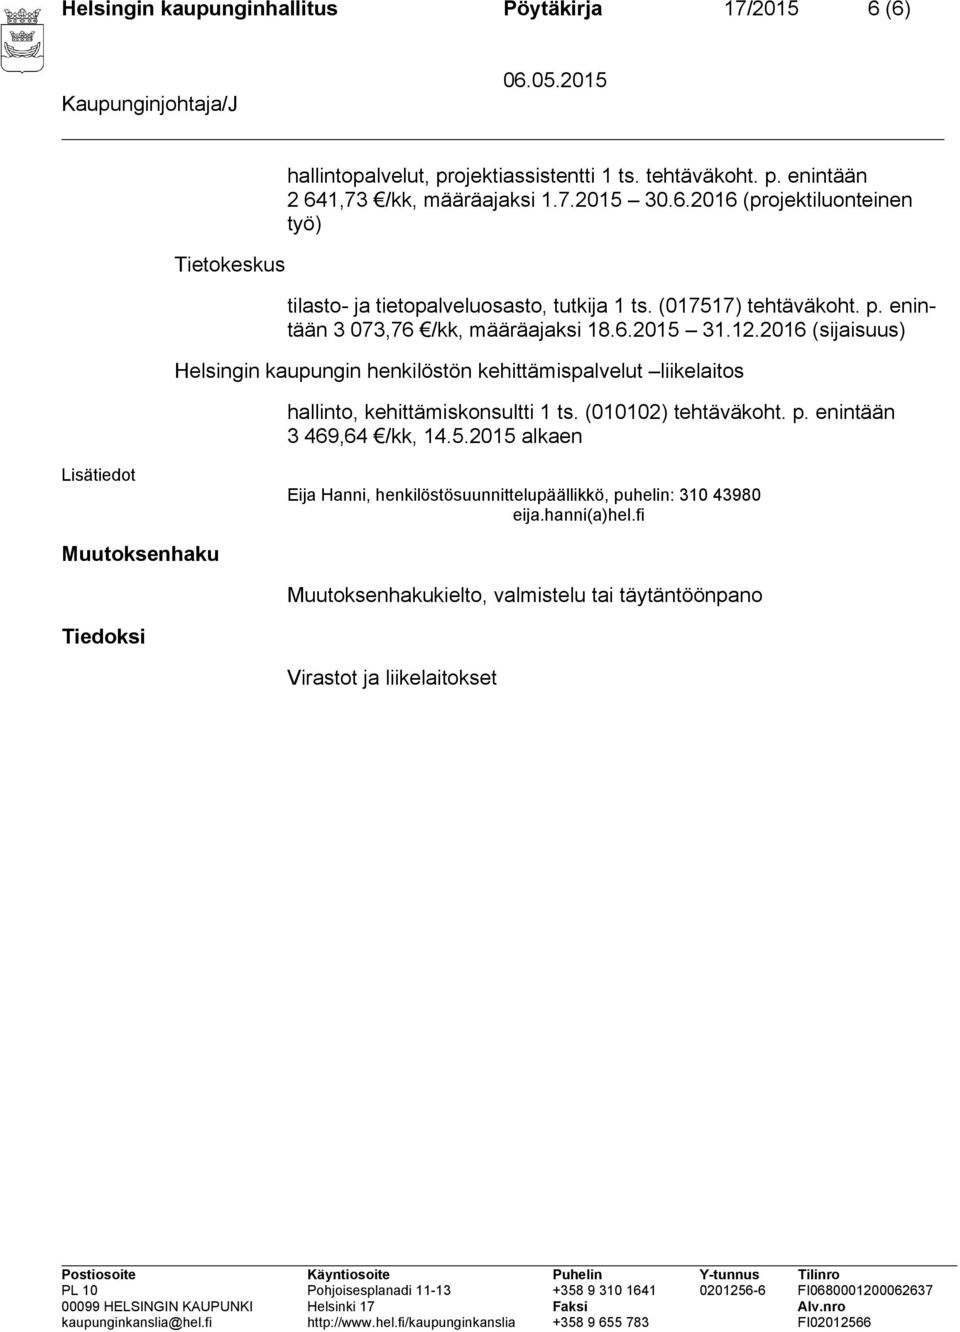 2016 Helsingin kaupungin henkilöstön kehittämispalvelut liikelaitos hallinto, kehittämiskonsultti 1 ts. (010102) tehtäväkoht. p. enintään 3 469,64 /kk, 14.5.